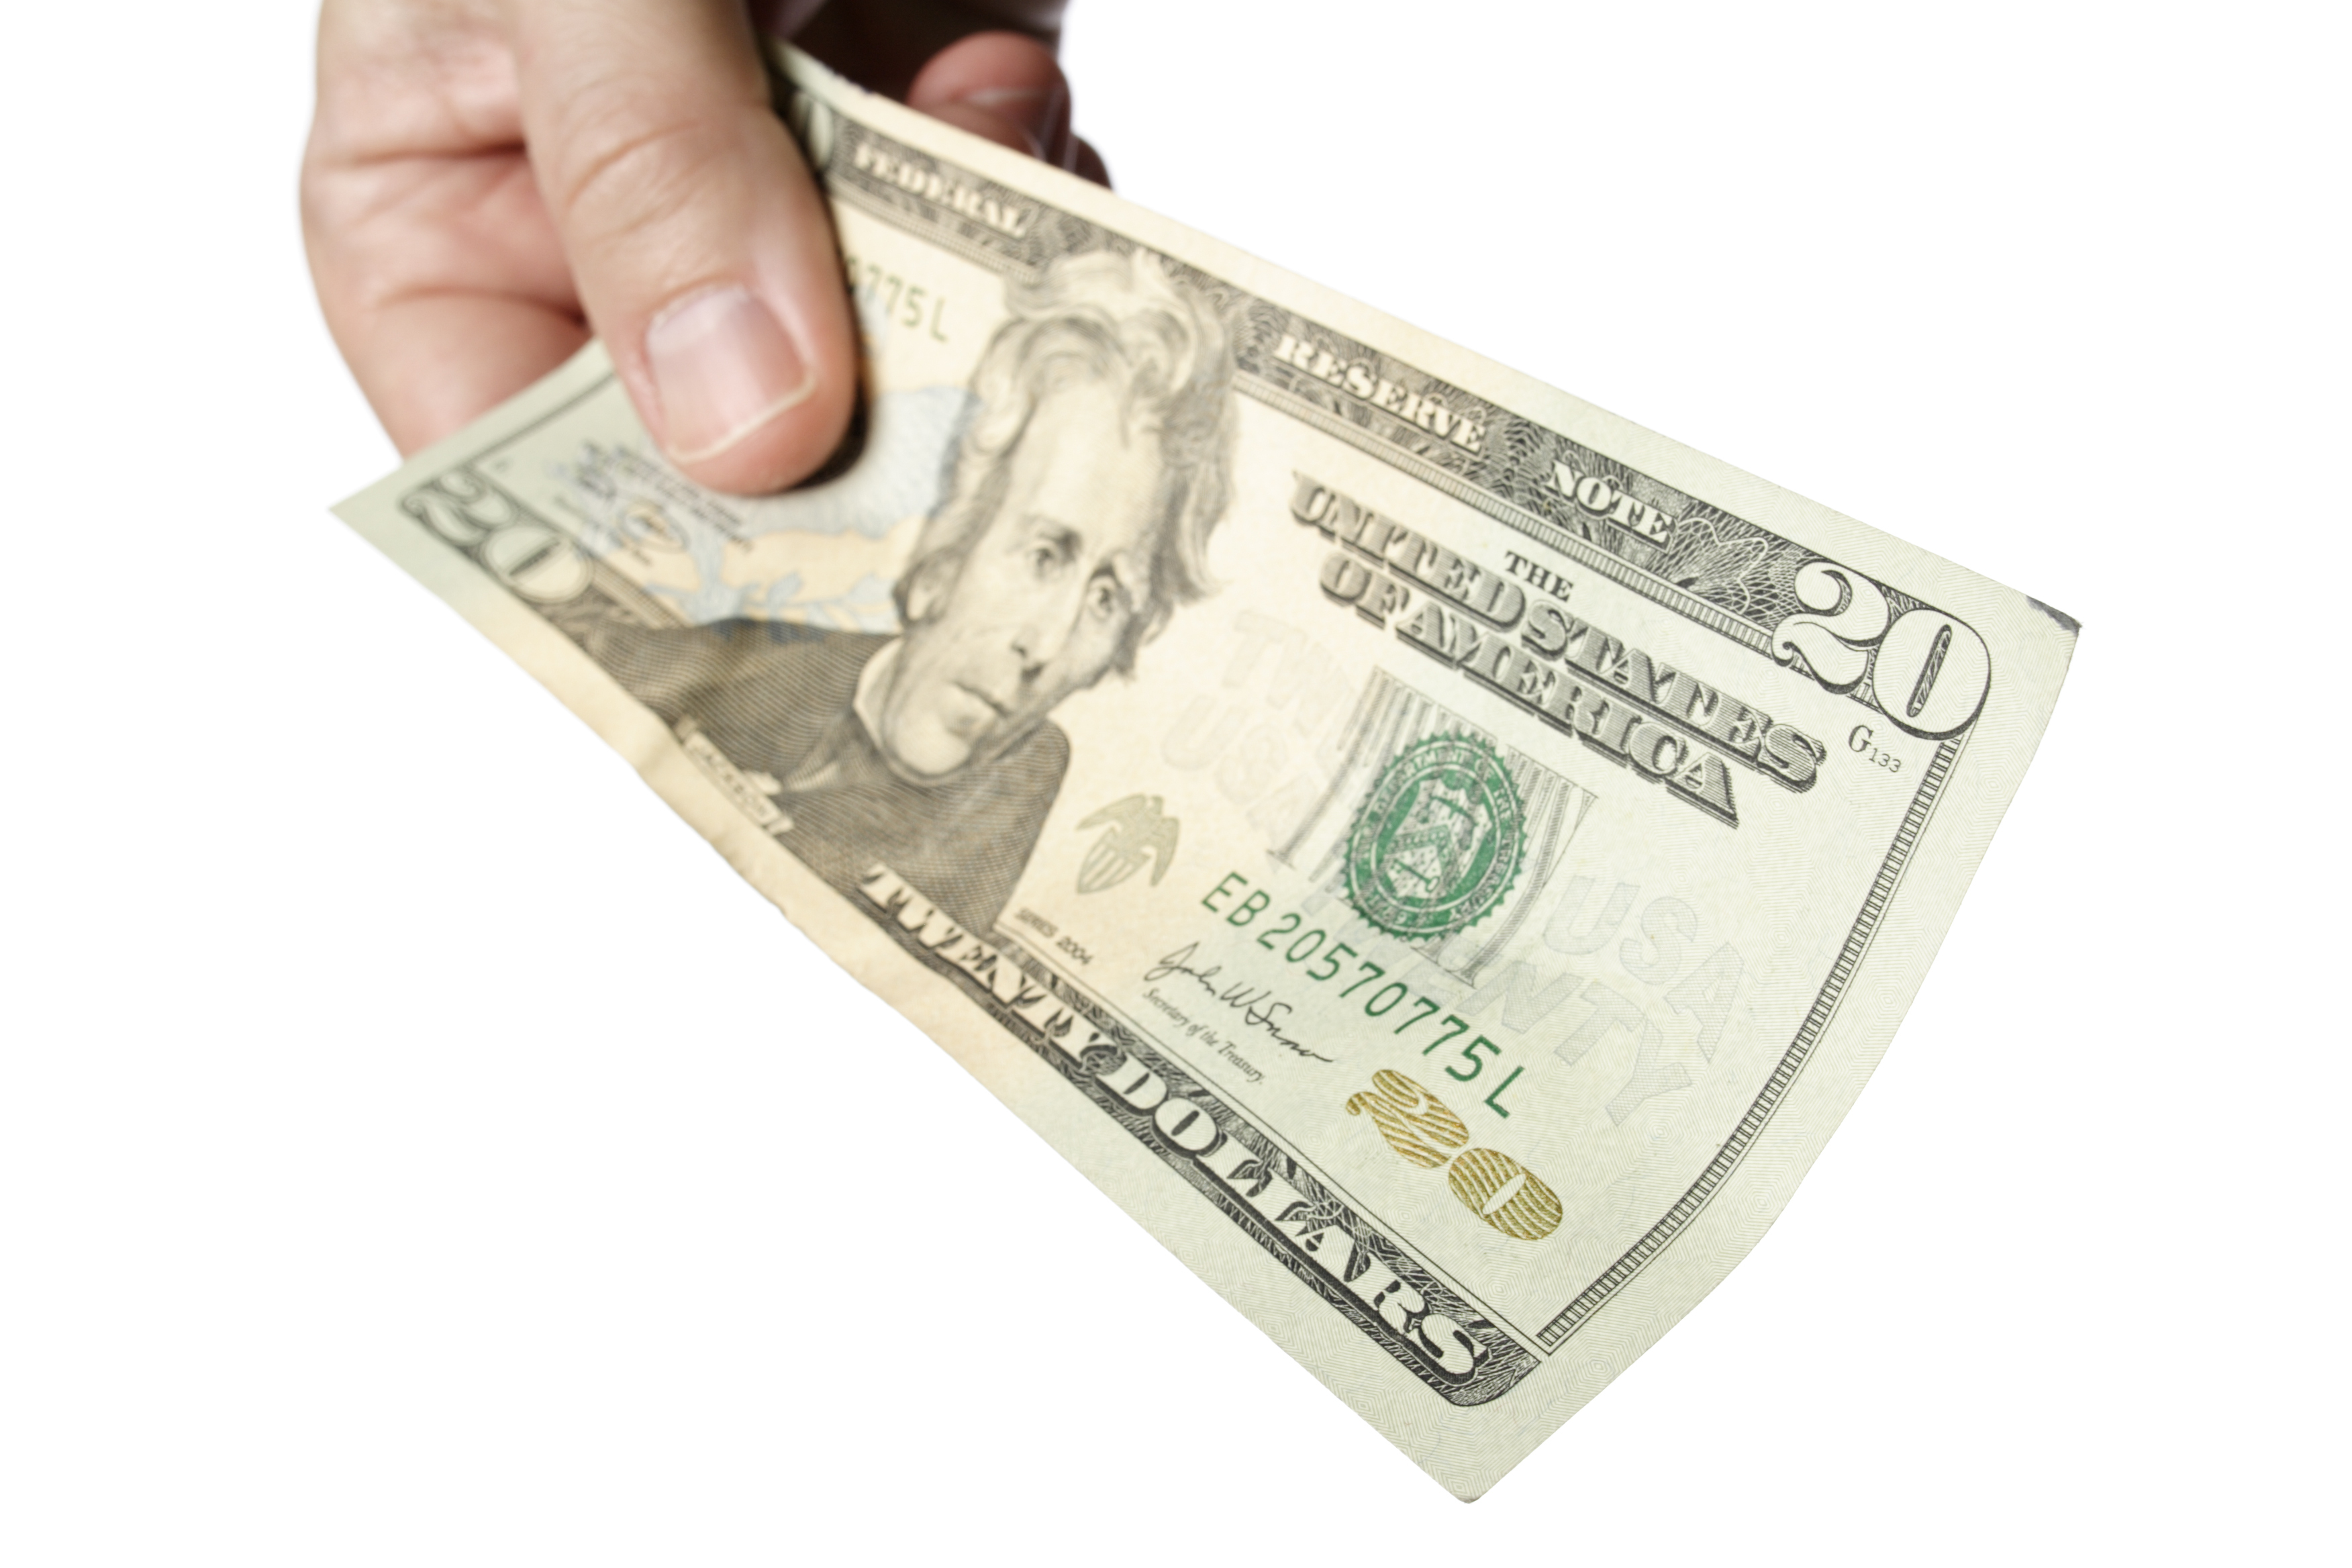 A $20 bill | Source: Shutterstock